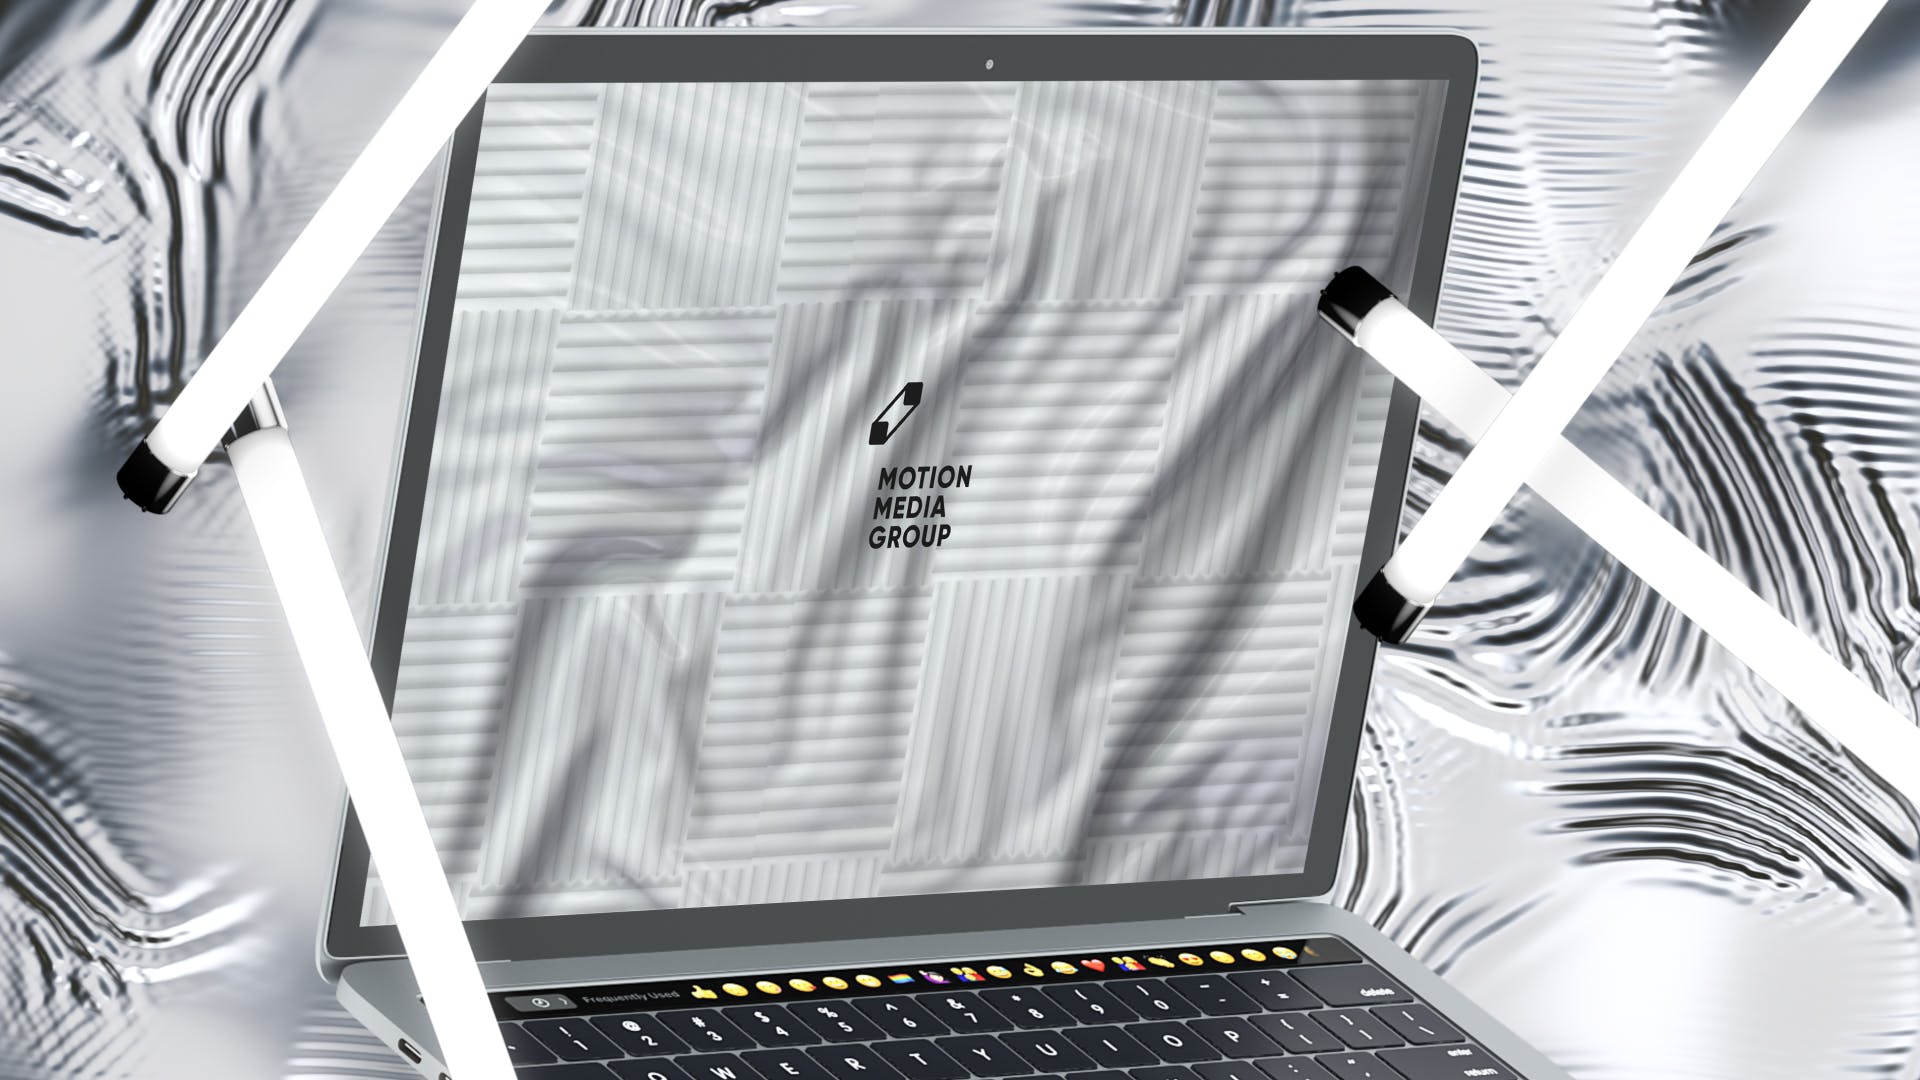 优雅时尚风格3D立体风格笔记本电脑屏幕预览第一素材精选样机 10 Light Laptop Mockups插图(6)